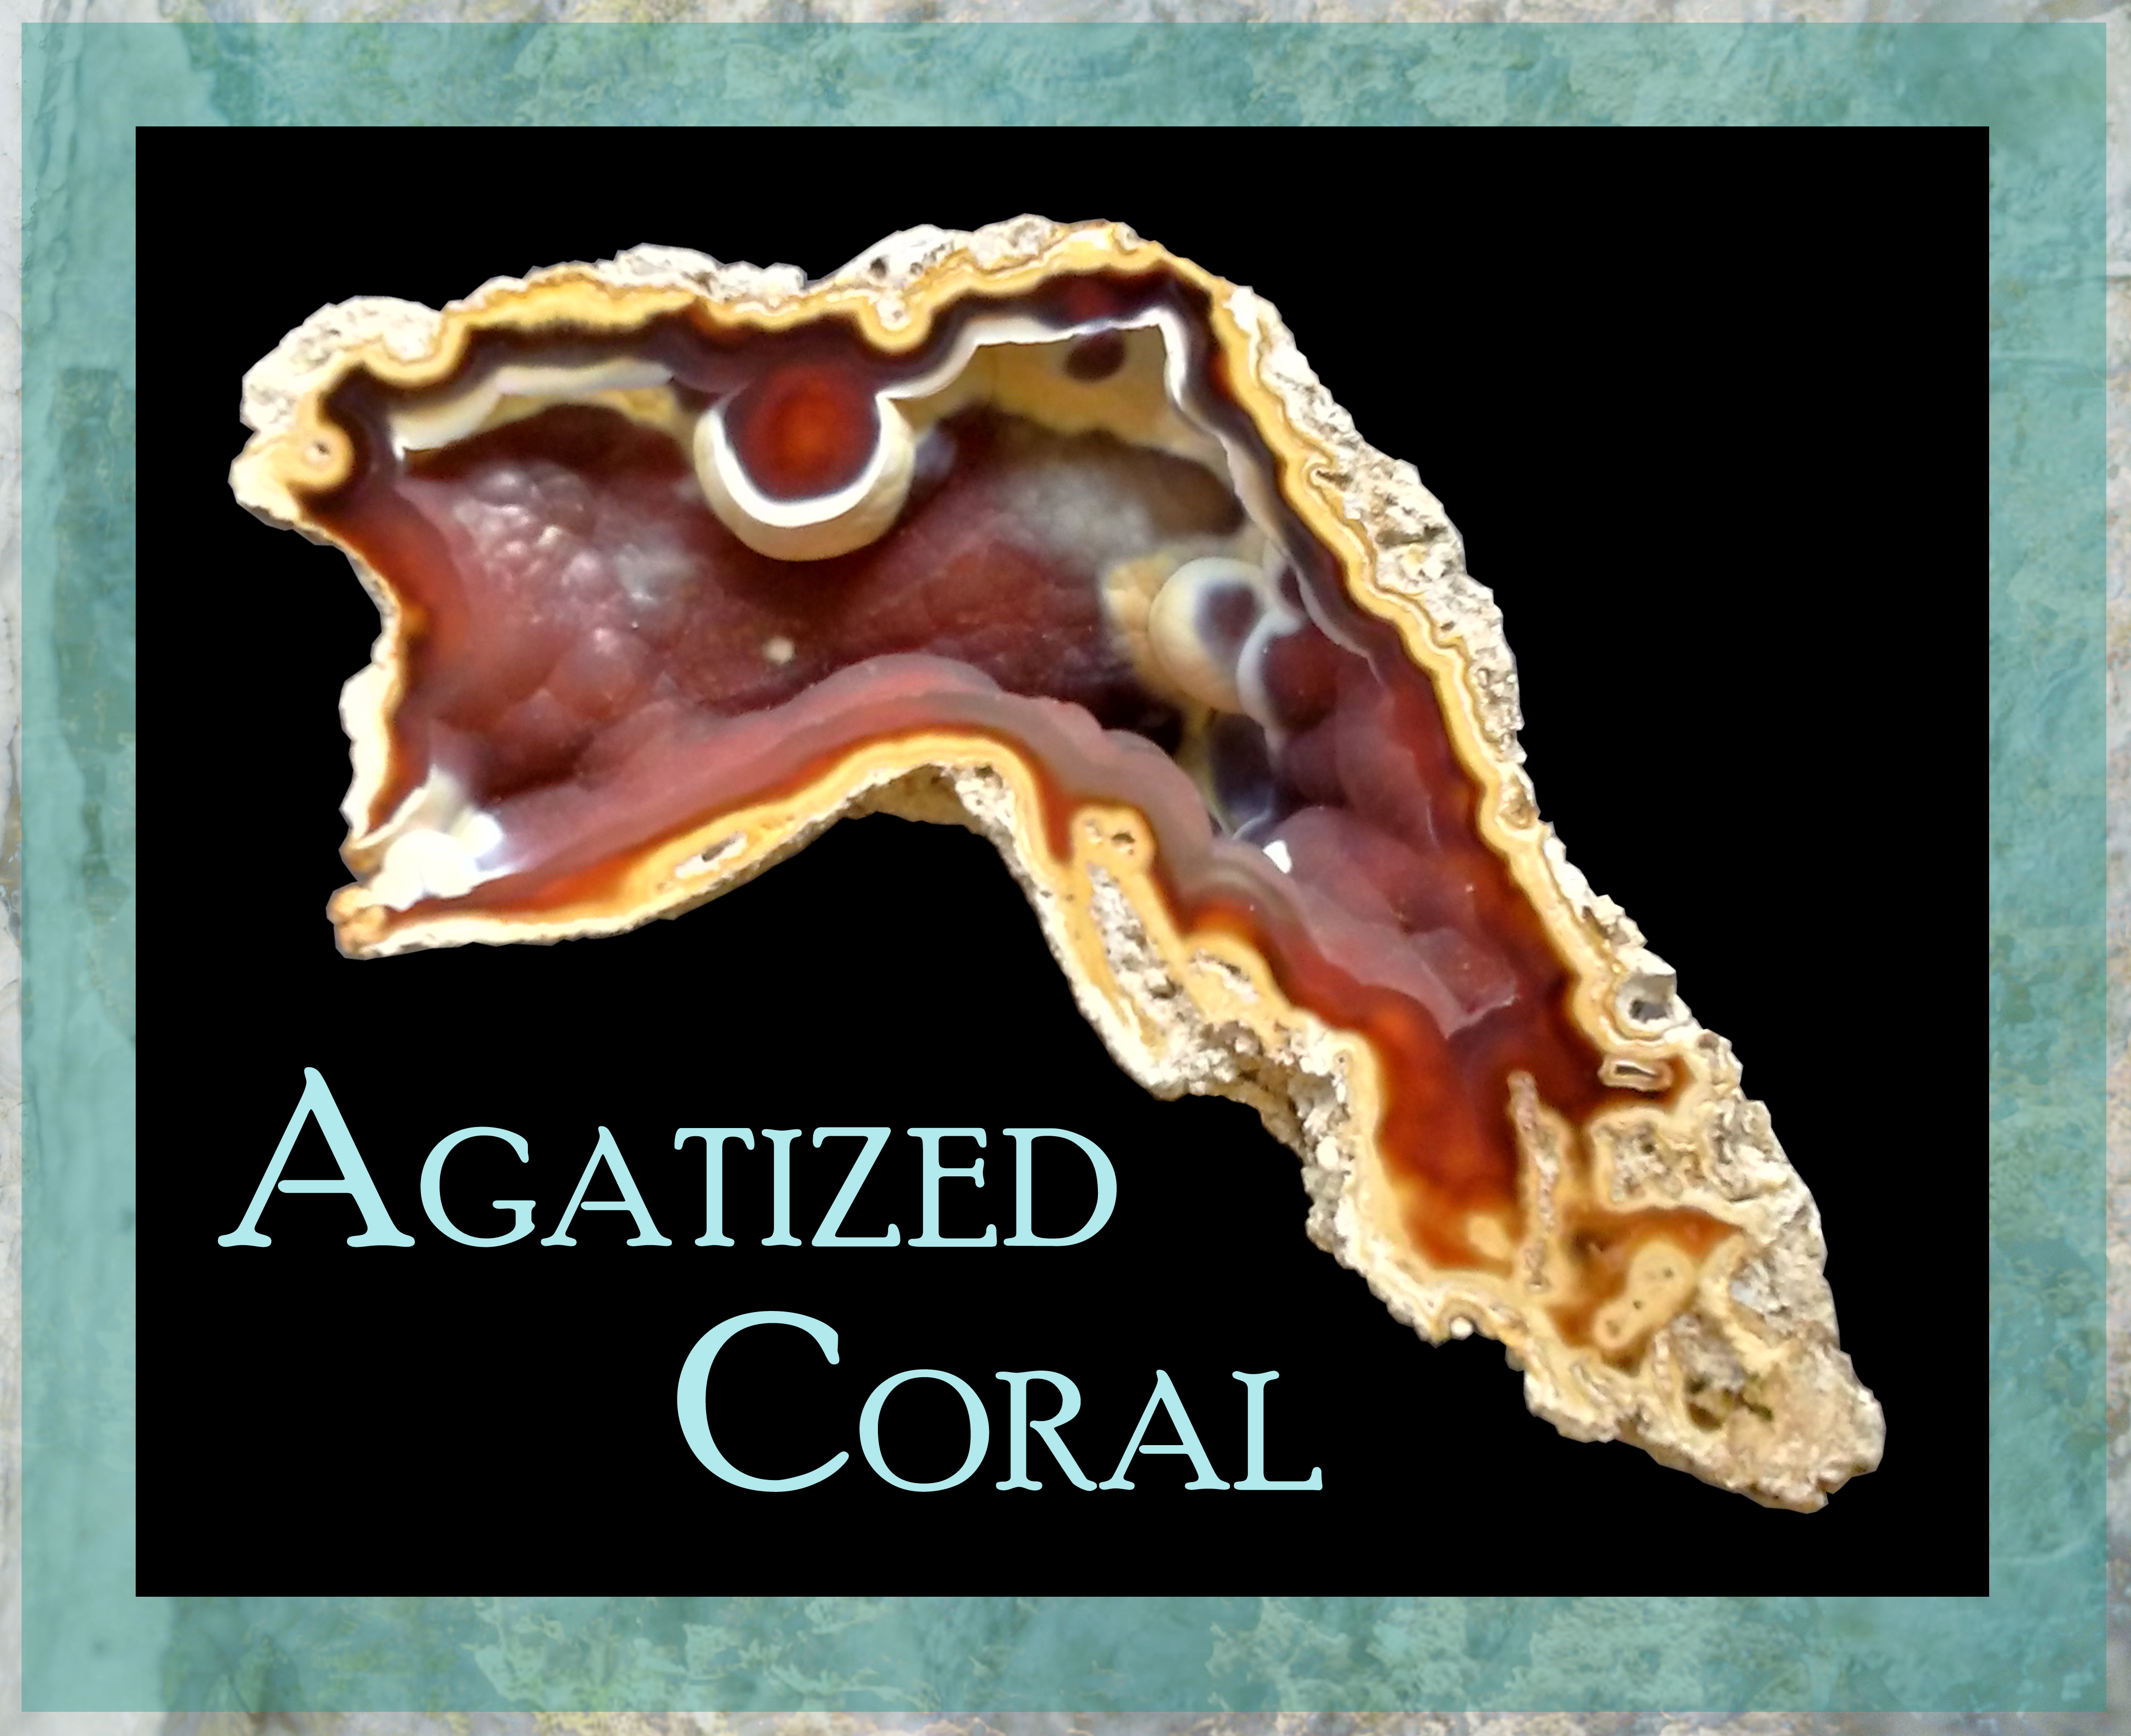 Agatized Coral exhibit